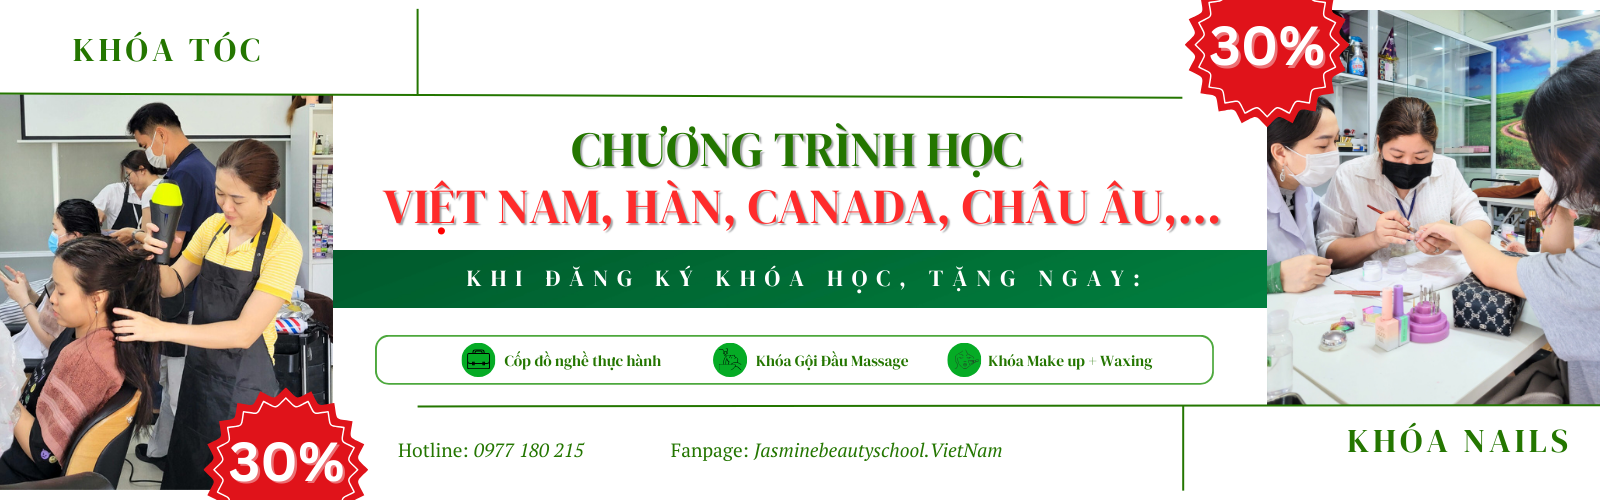 banner khóa nails tóc Việt Nam, Châu Âu